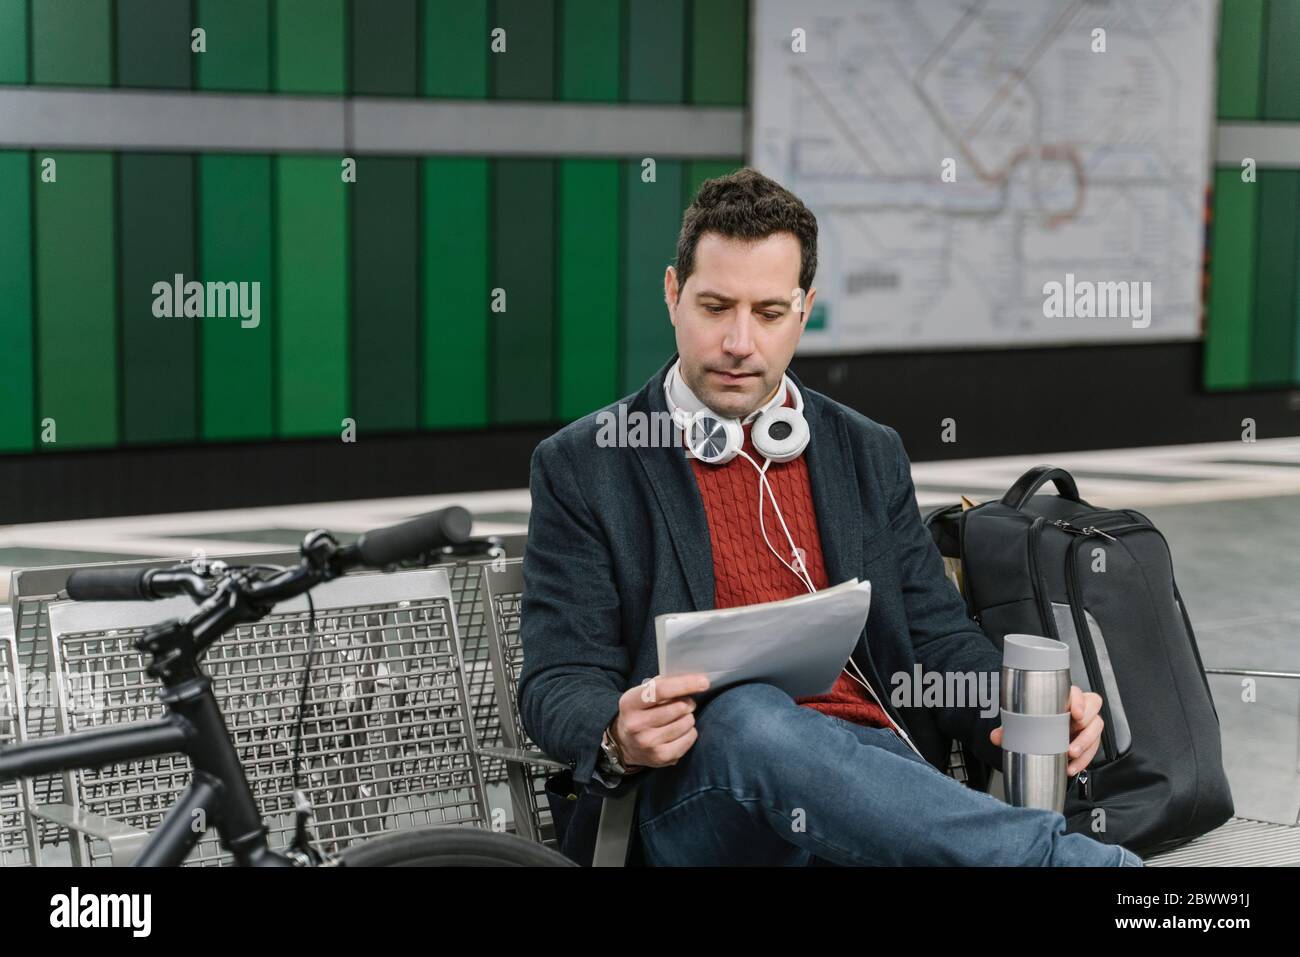 Geschäftsmann mit Fahrrad-Leseunterlagen während der Sitzung am U-Bahn-Bahnsteig,  Frankfurt, Deutschland Stockfotografie - Alamy